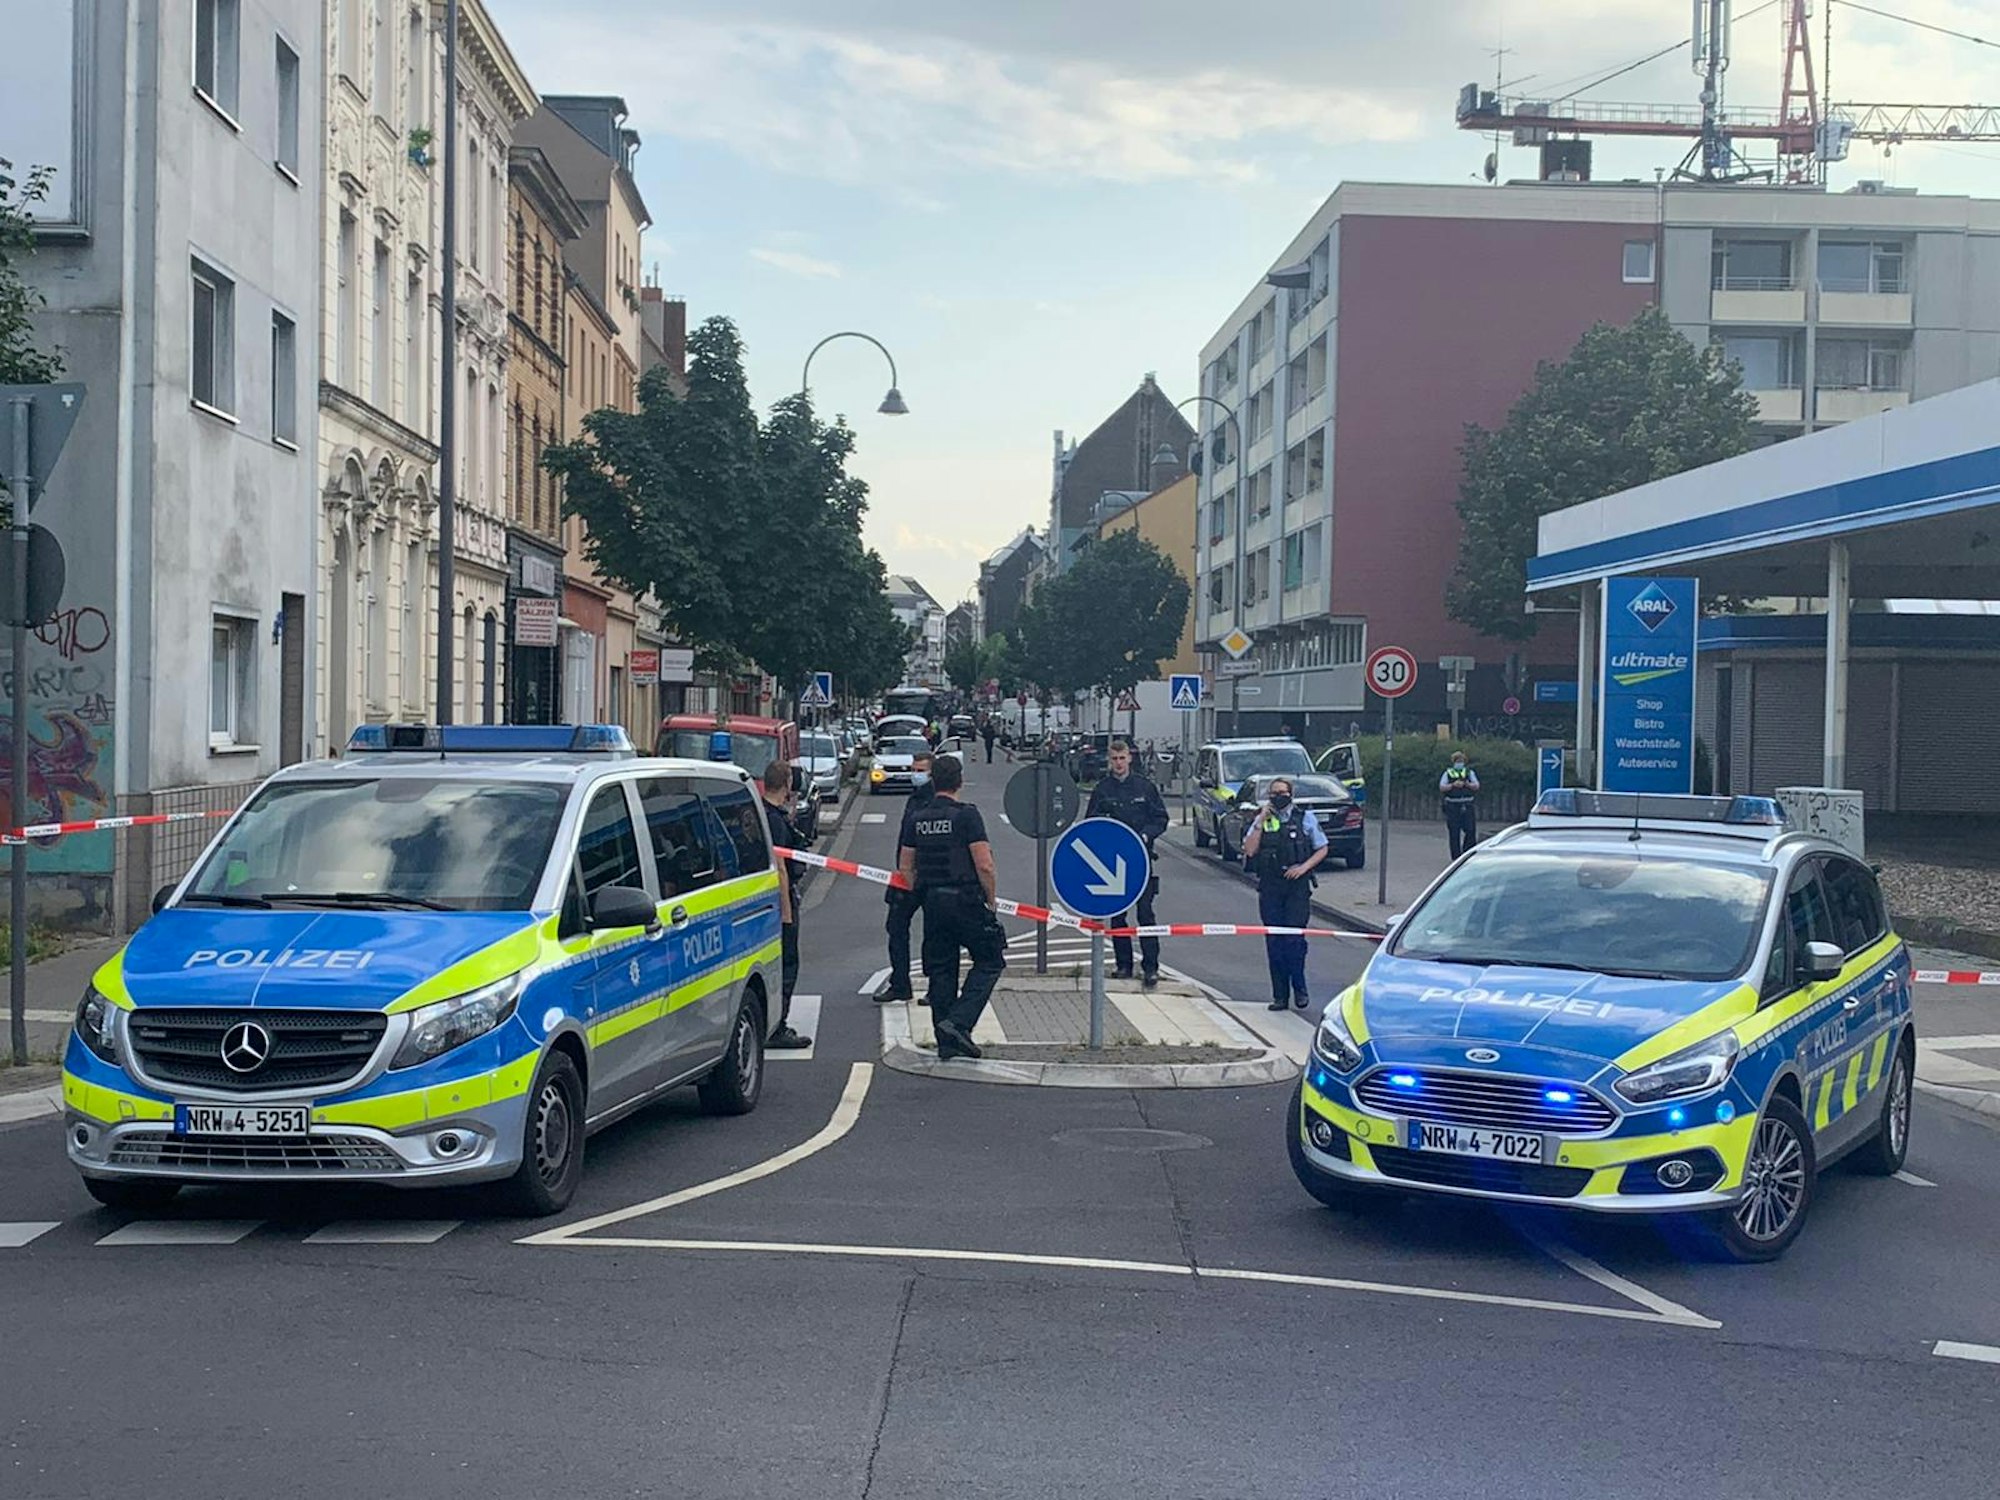 02.08.2021, Köln: Ein Auto steht hinter einer Polizeiabsperrung auf der Berliner Straße. Ersten Informationen zufolge soll sich in dem Fahrzeug eine Handgranate befinden.